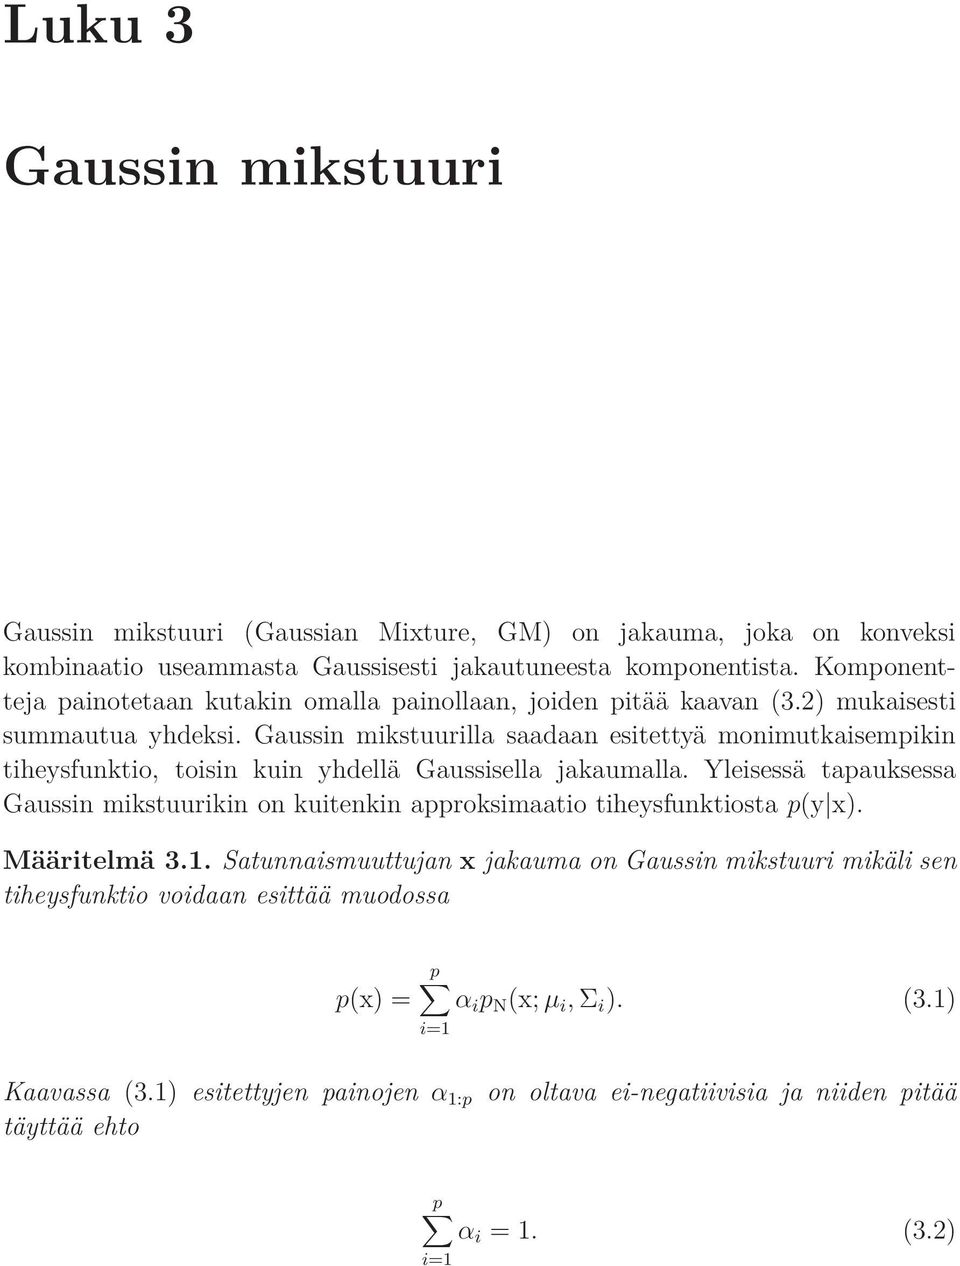 Gaussin mikstuurilla saadaan esitettyä monimutkaisempikin tiheysfunktio, toisin kuin yhdellä Gaussisella jakaumalla.